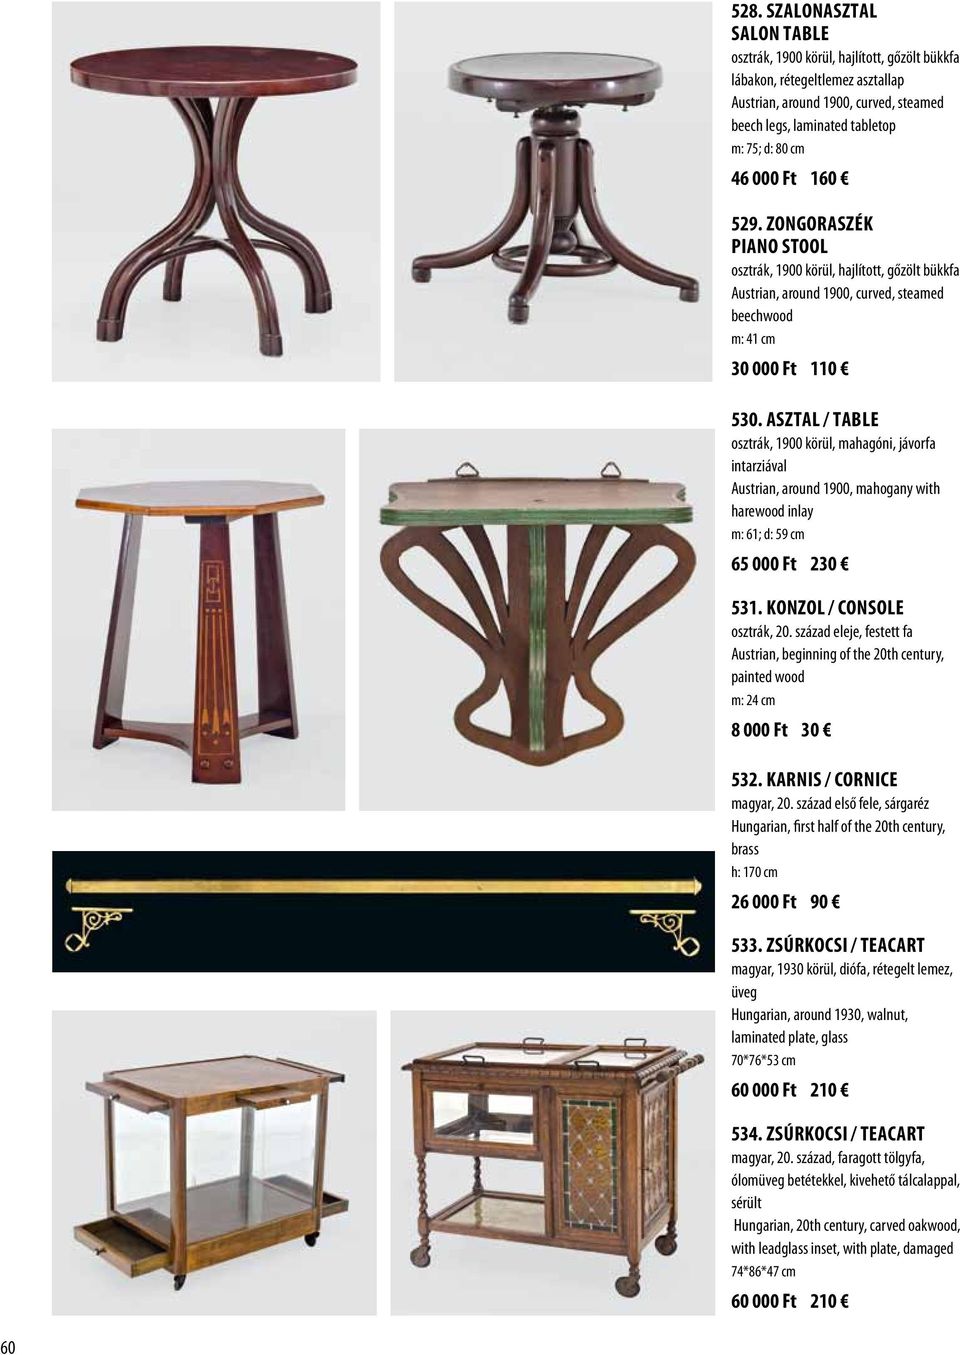 Asztal / Table osztrák, 1900 körül, mahagóni, jávorfa intarziával Austrian, around 1900, mahogany with harewood inlay m: 61; d: 59 cm 65 000 Ft 230 531. Konzol / Console osztrák, 20.